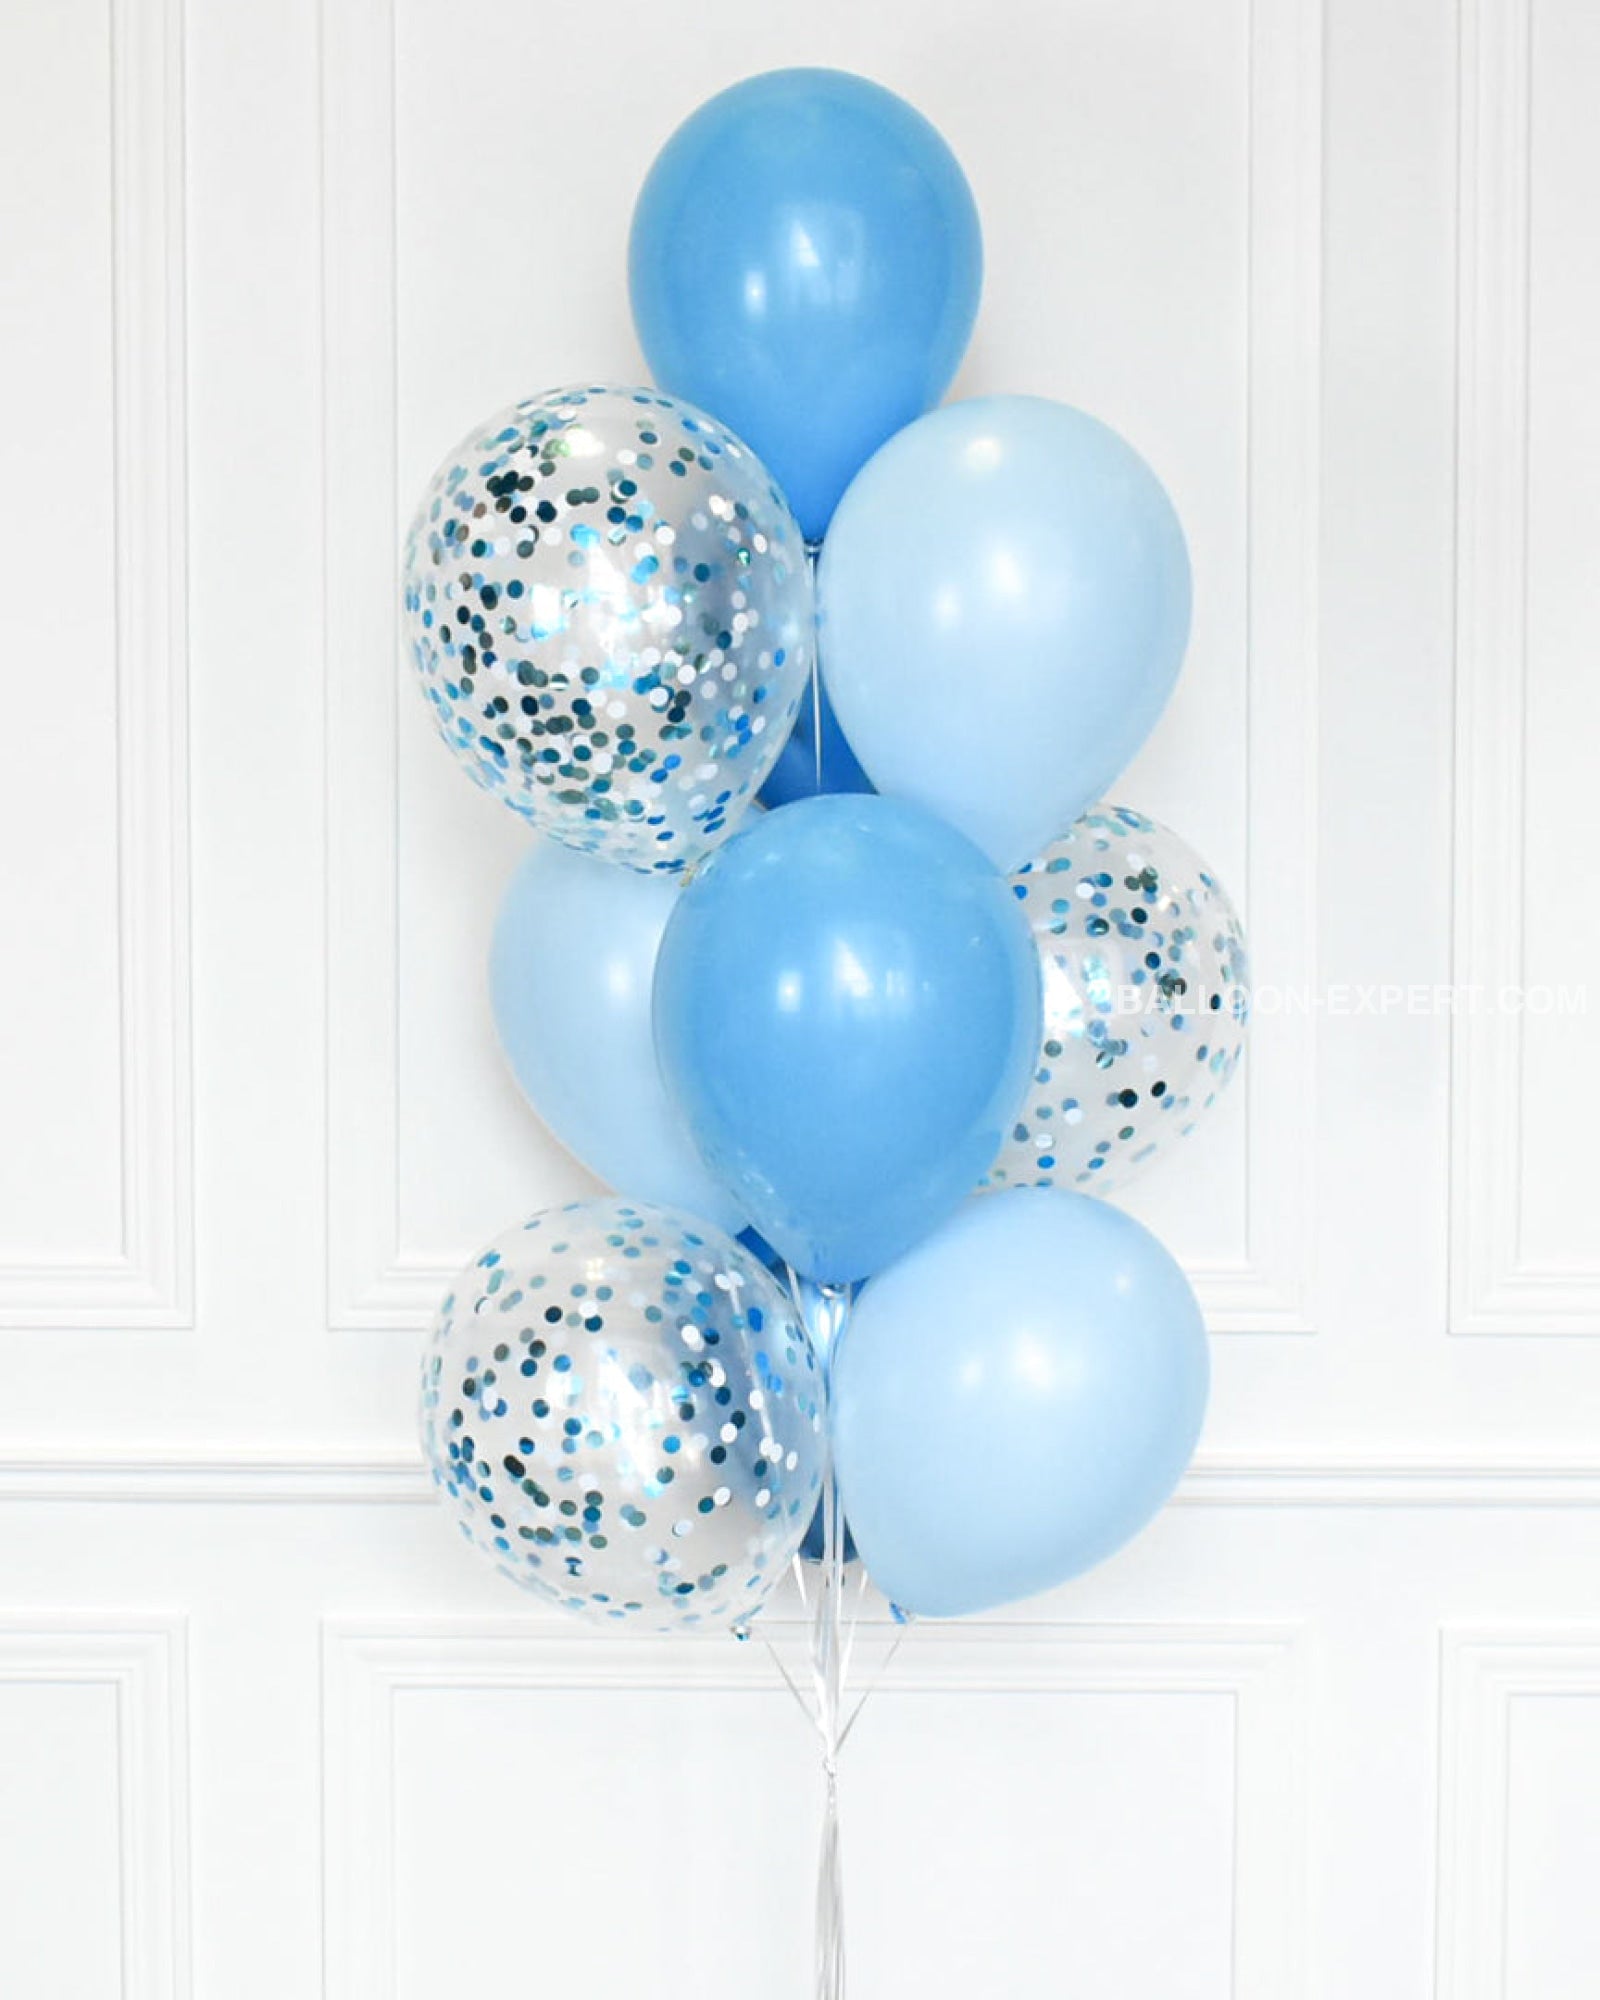 Ballon bulle personnalisé avec ballons en latex bleu et argent – Balloon  Expert